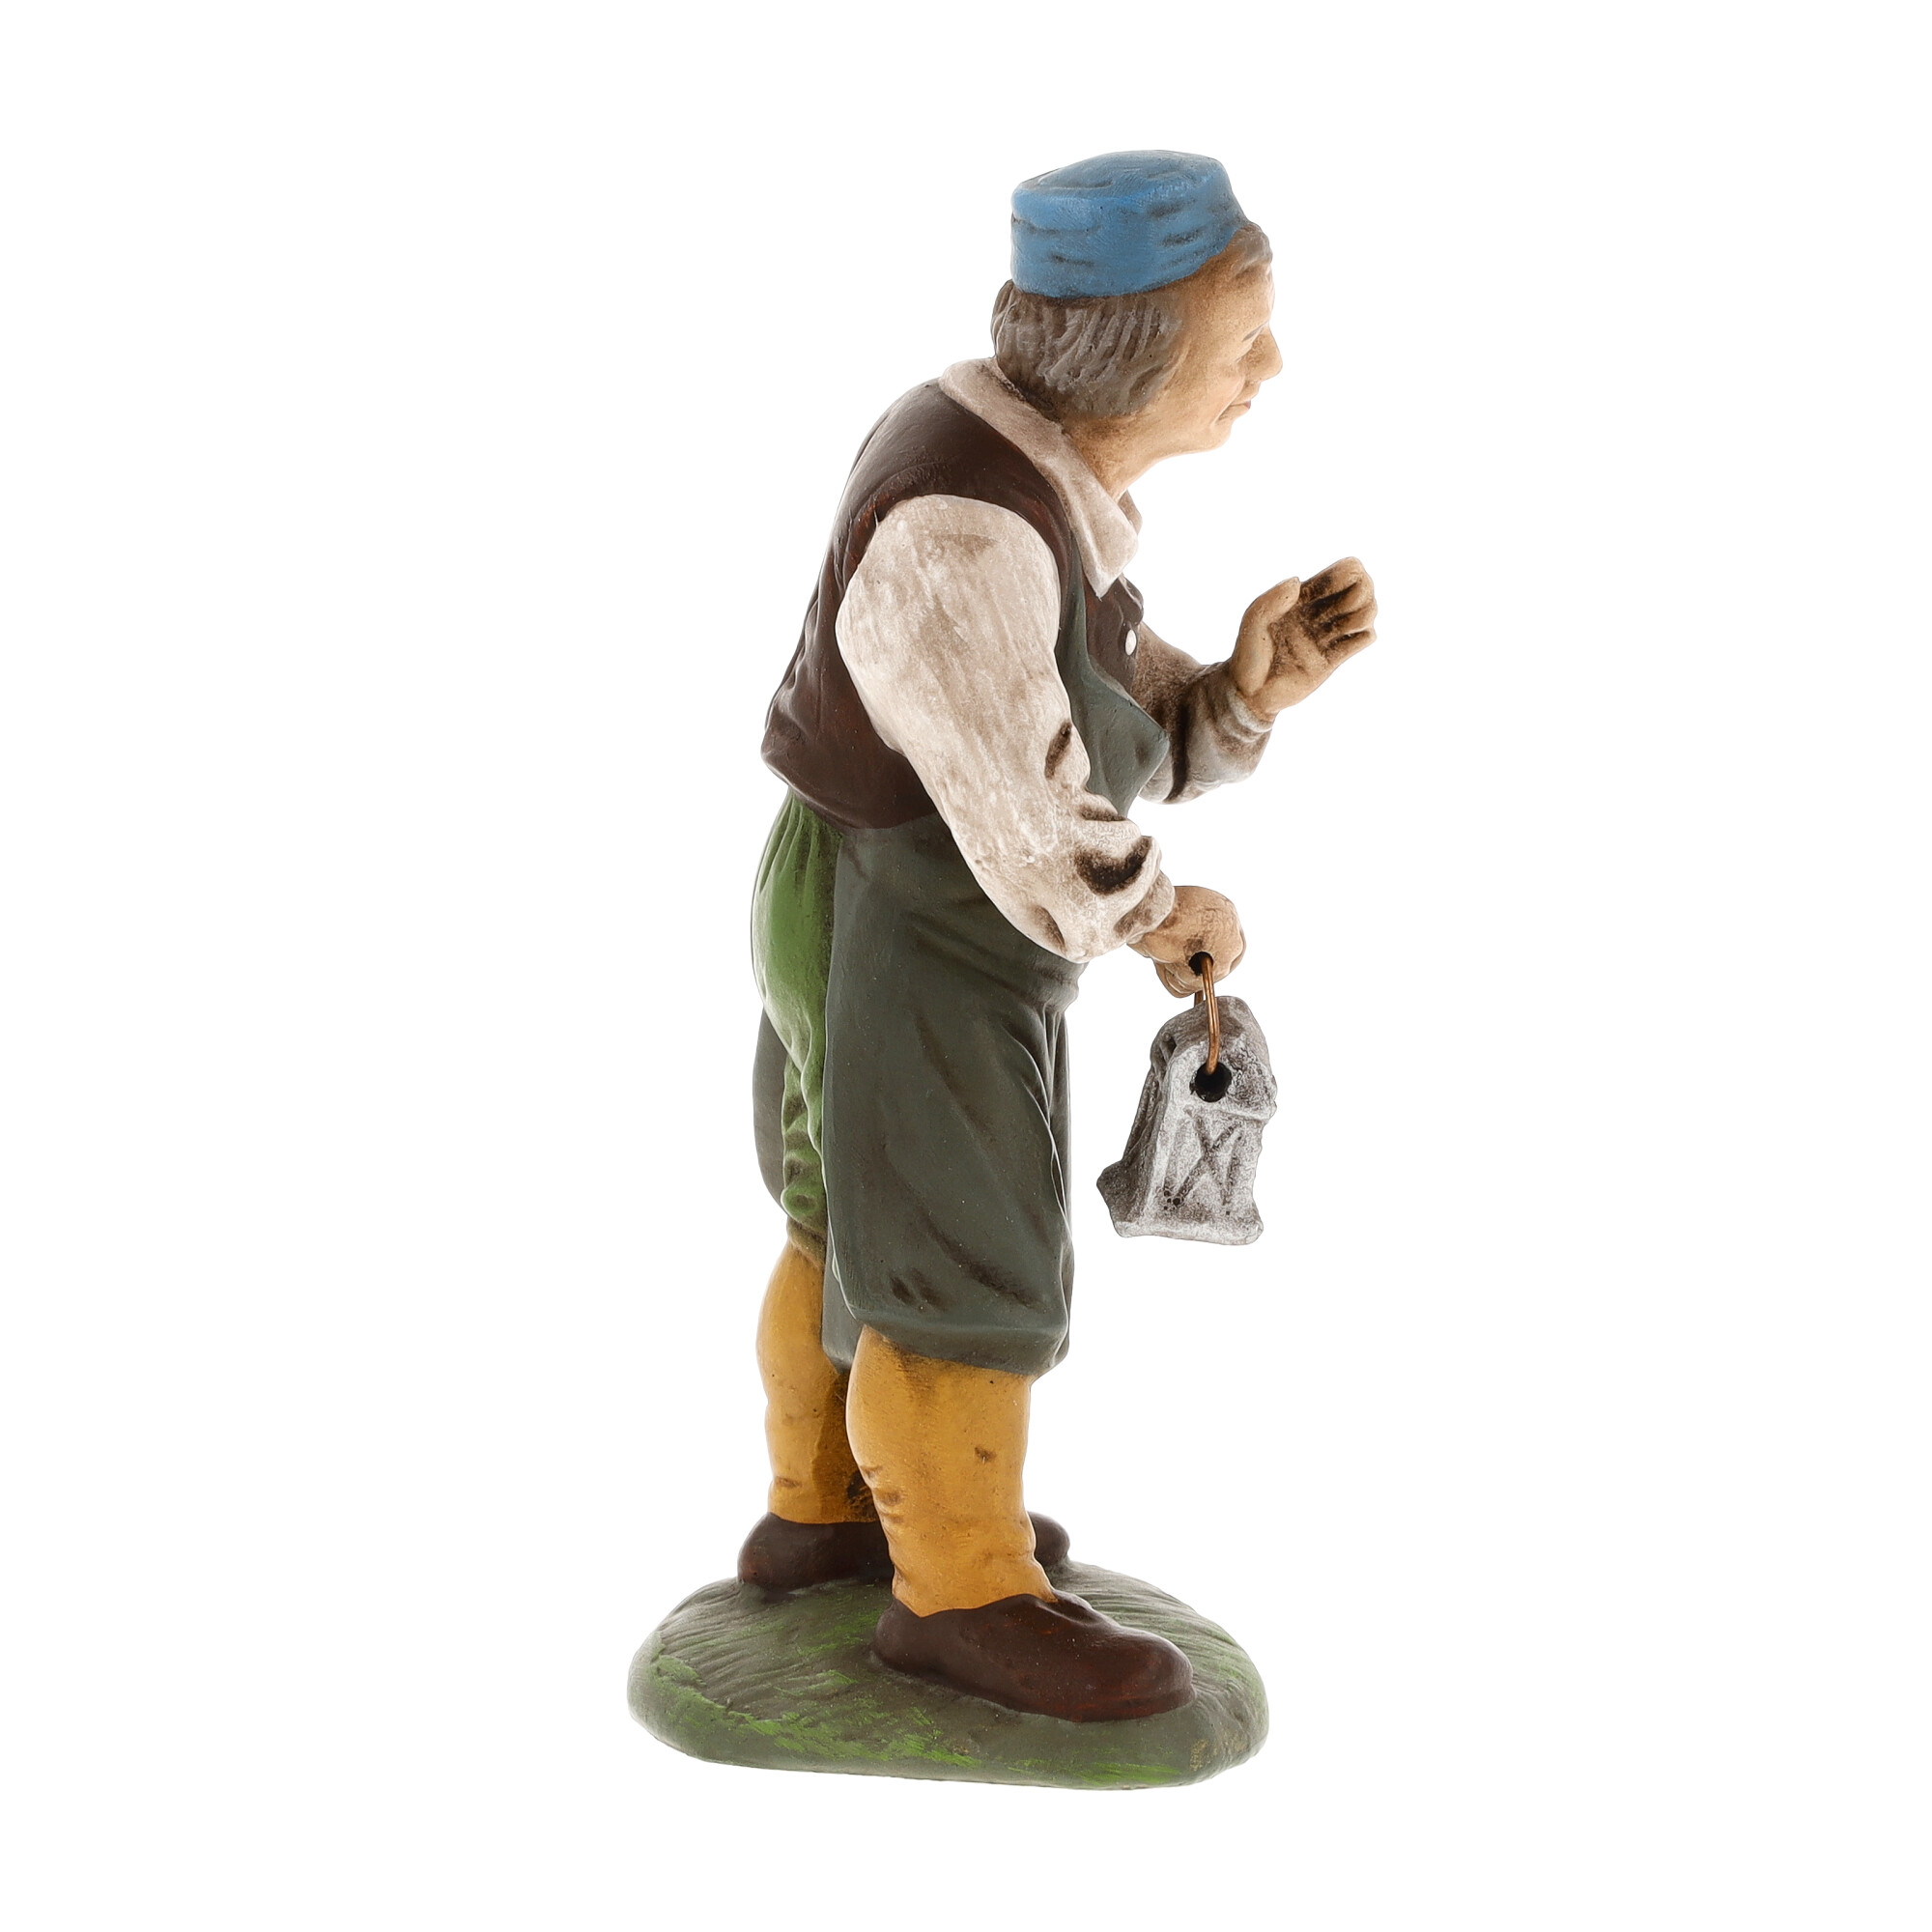 Wirt mit Laterne, zu 11cm Krippenfiguren - Original MAROLIN® - Krippenfigur für Ihre Weihnachtskrippe - Made in Germany